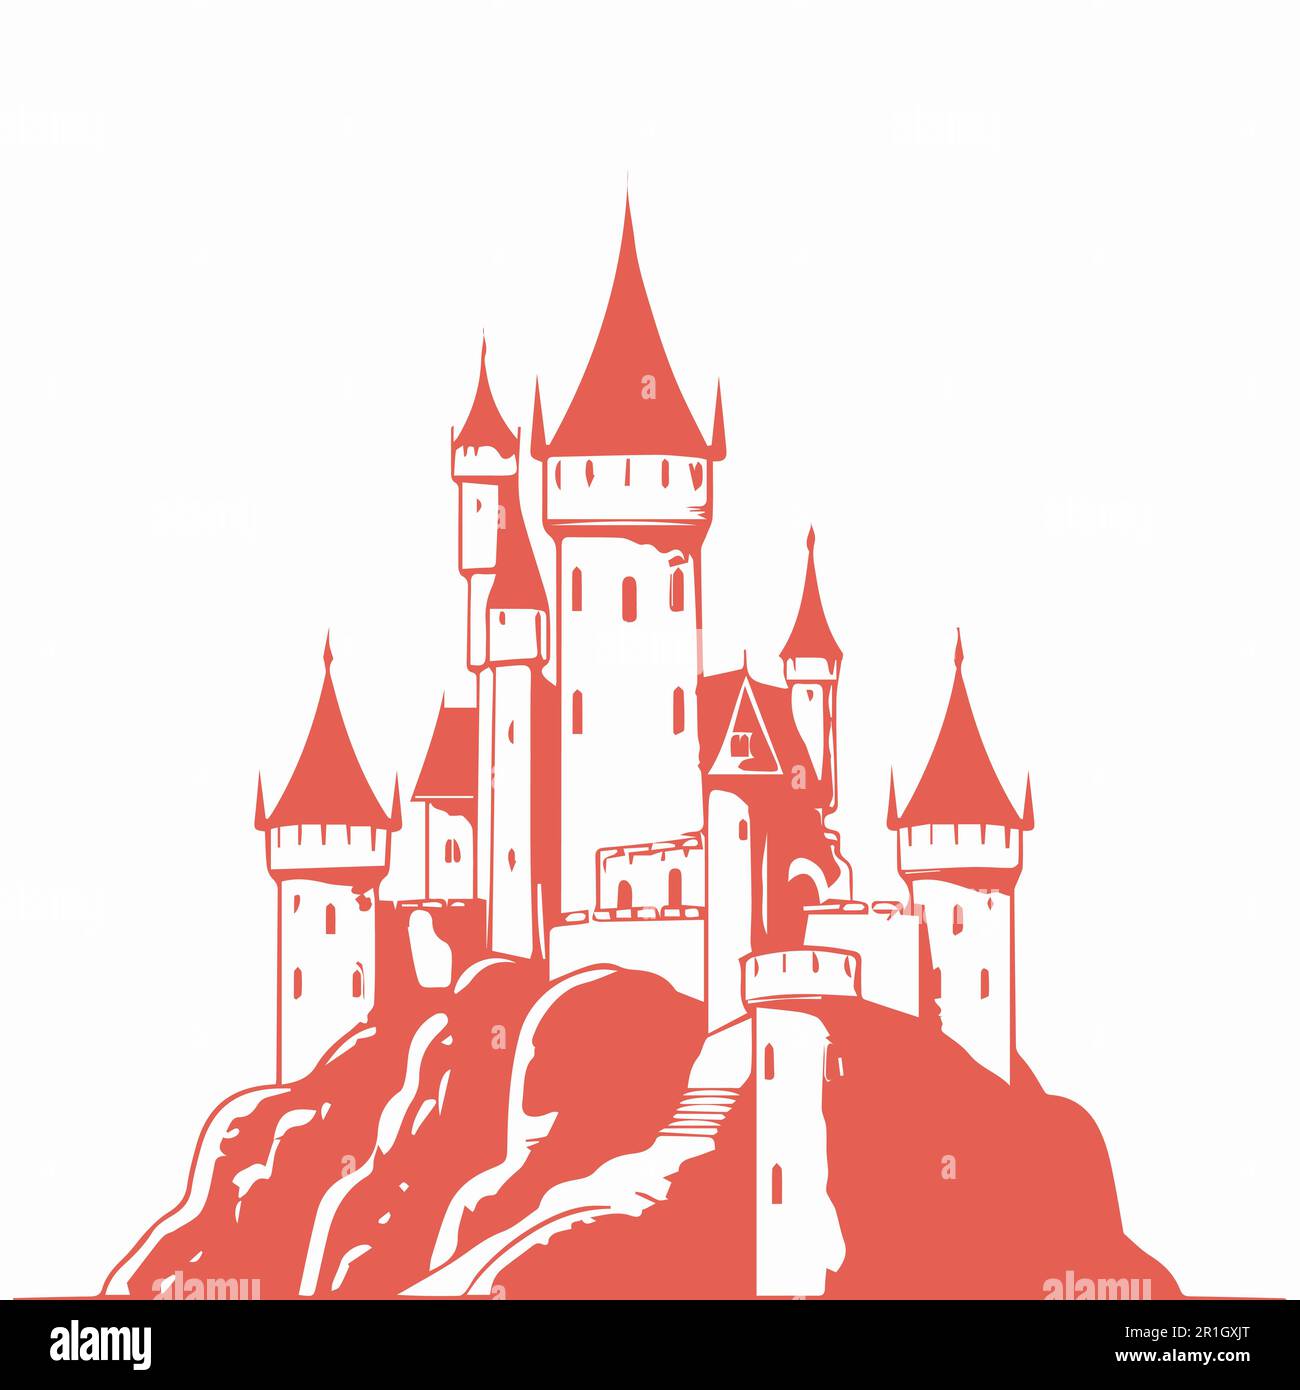 Una complessa pagina da colorare del castello delle fiabe per adulti. Illustrazione Vettoriale